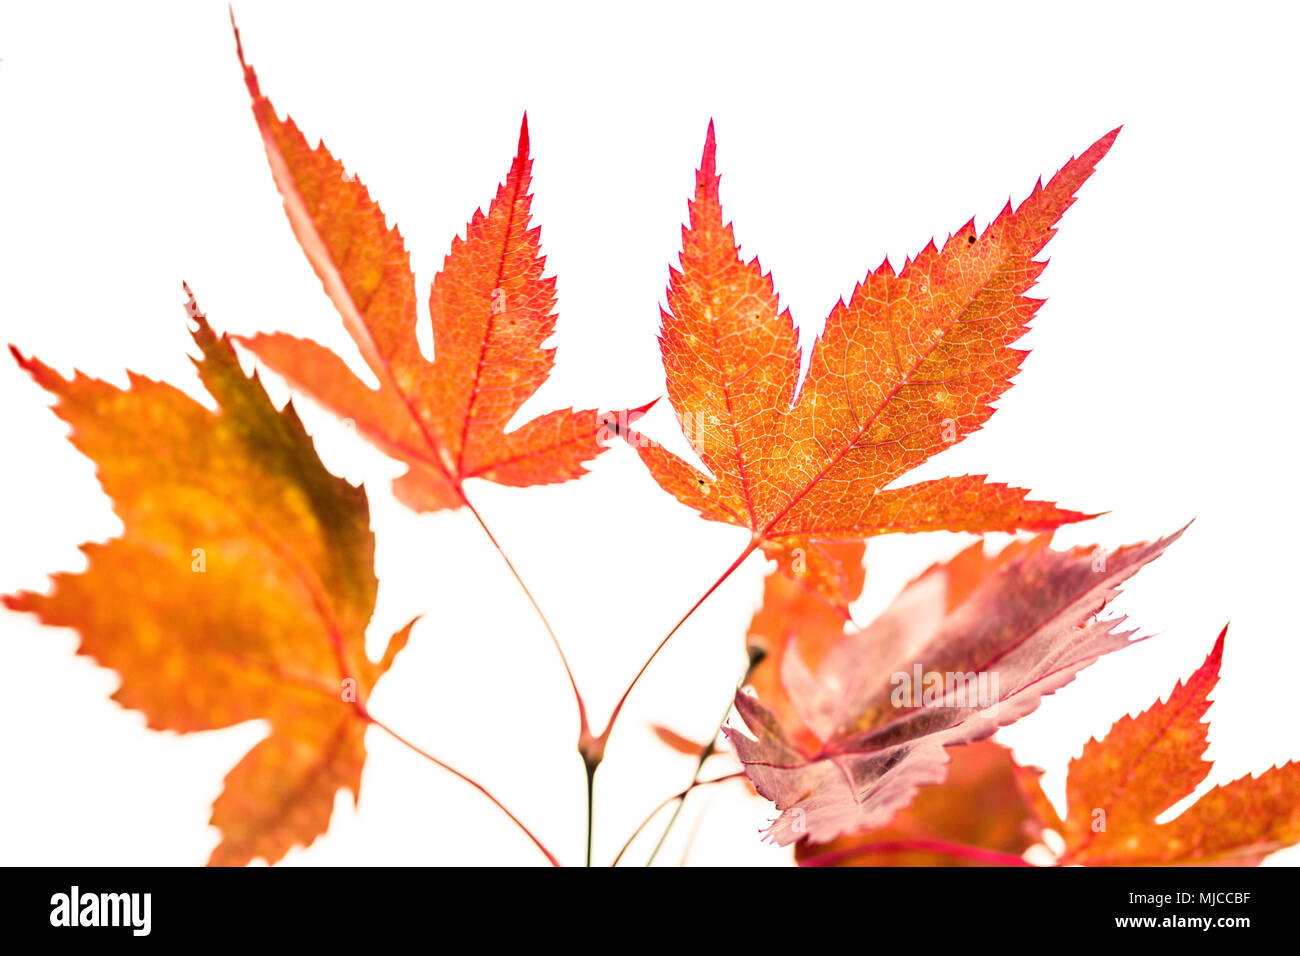 Les feuilles d'automne orange Beauful contre un ciel blanc Banque D'Images